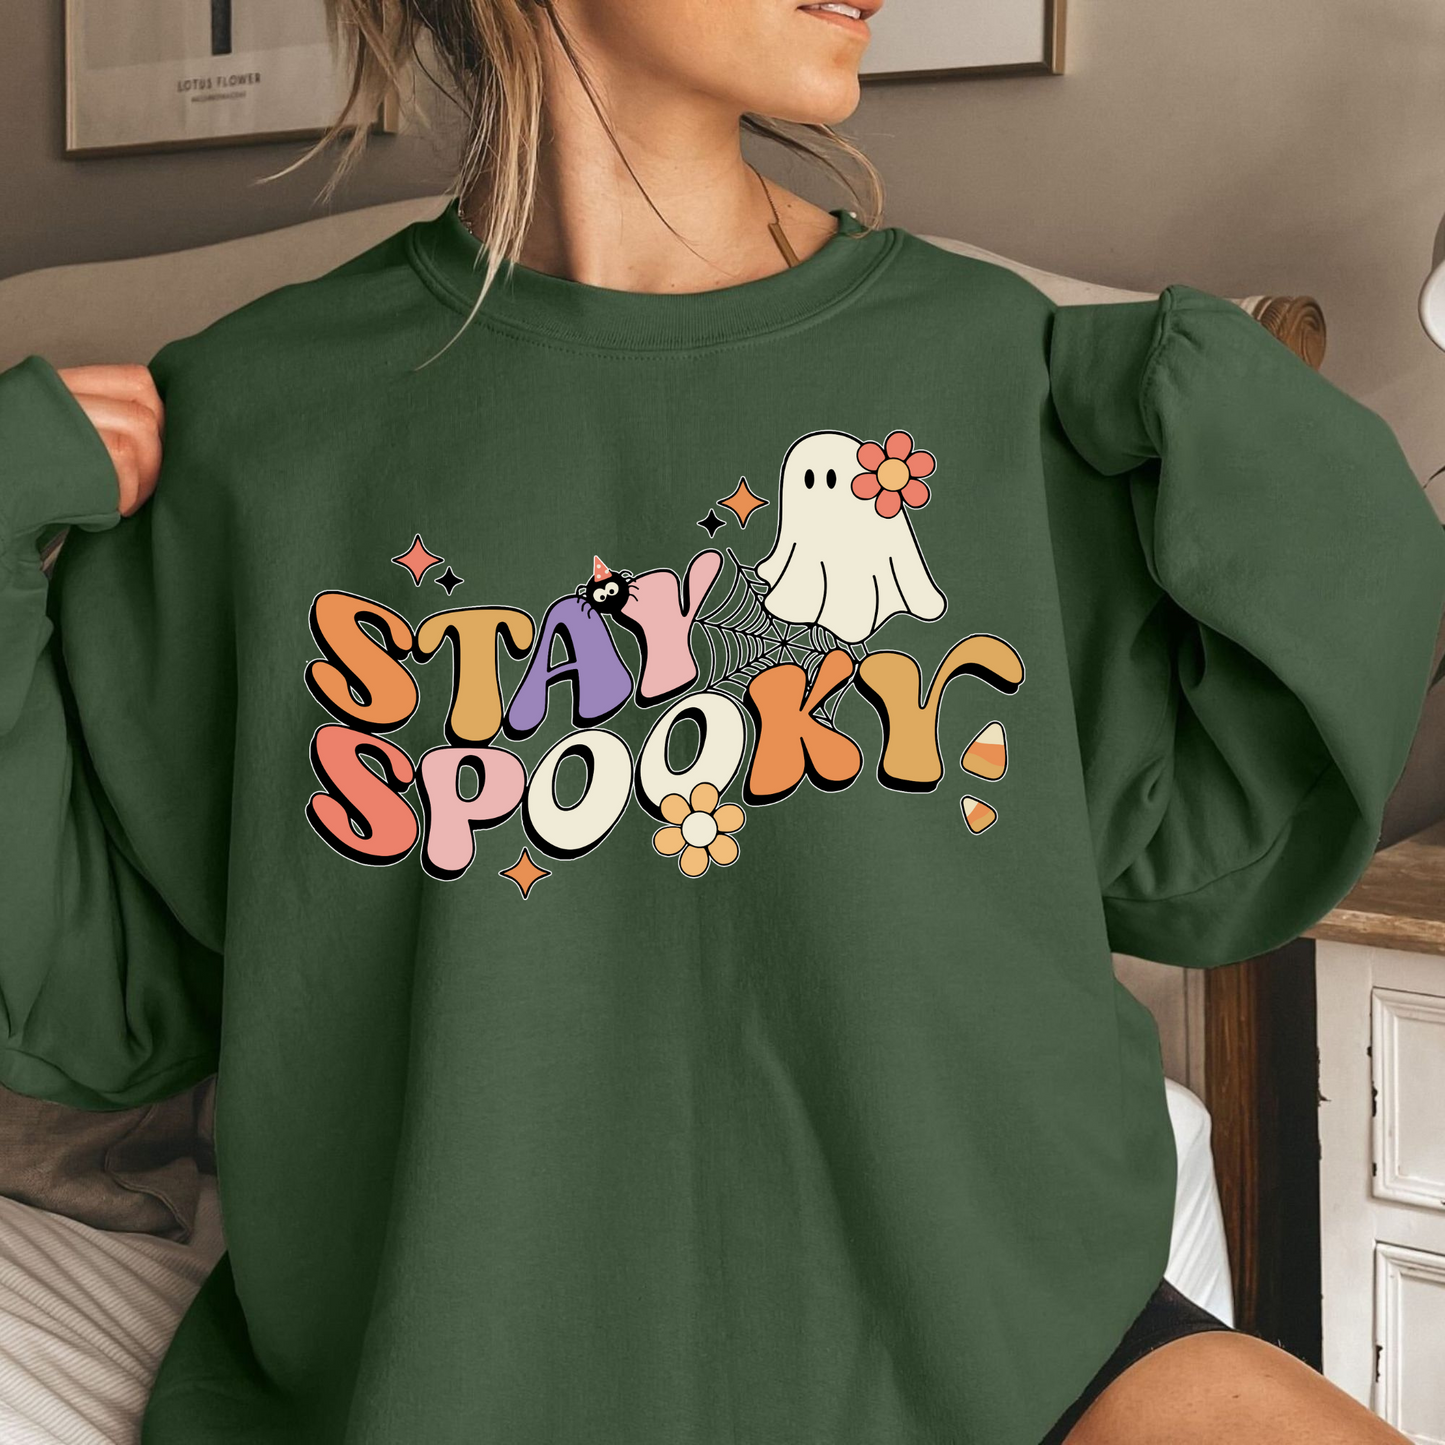 Retro-Geister-Halloween-T-Shirt - Geschenk für Gruselfans